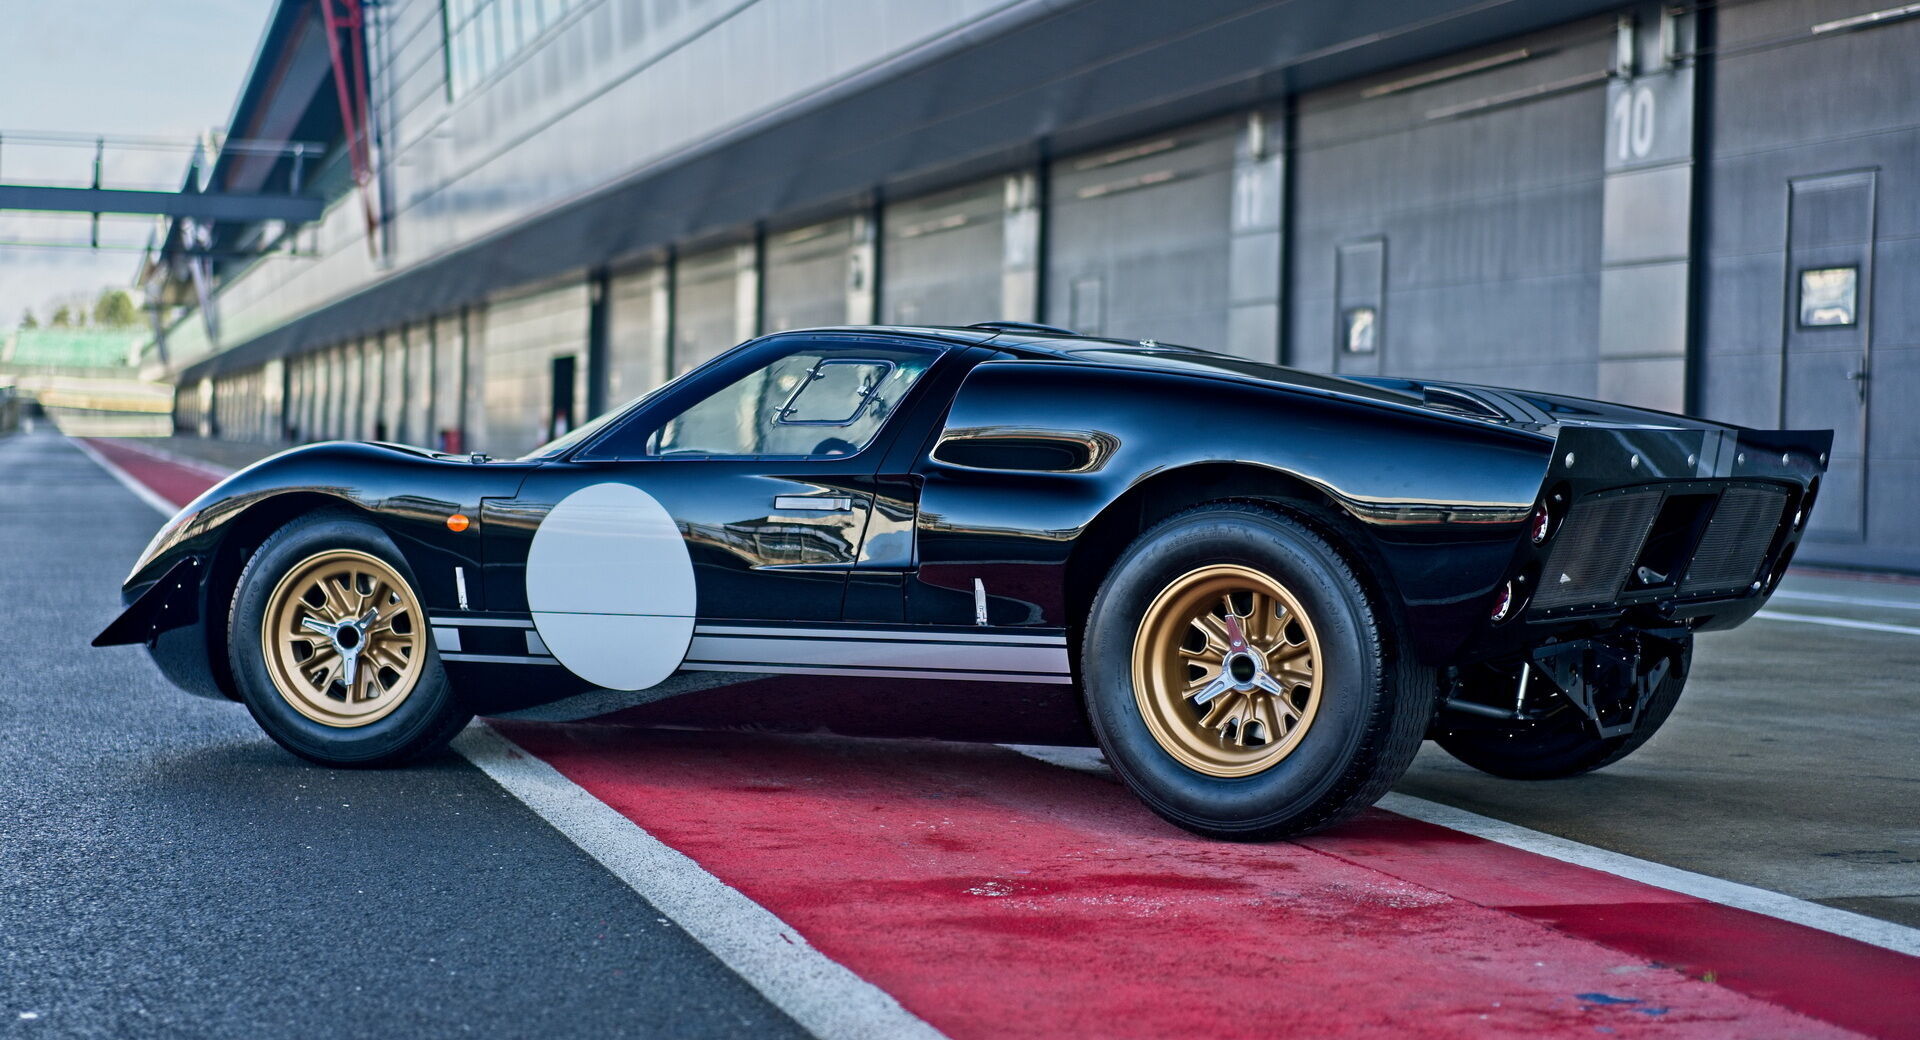 Після цілого ряду проєктів у компанії Everrati взялися за легендарний гоночний болід Ford GT40